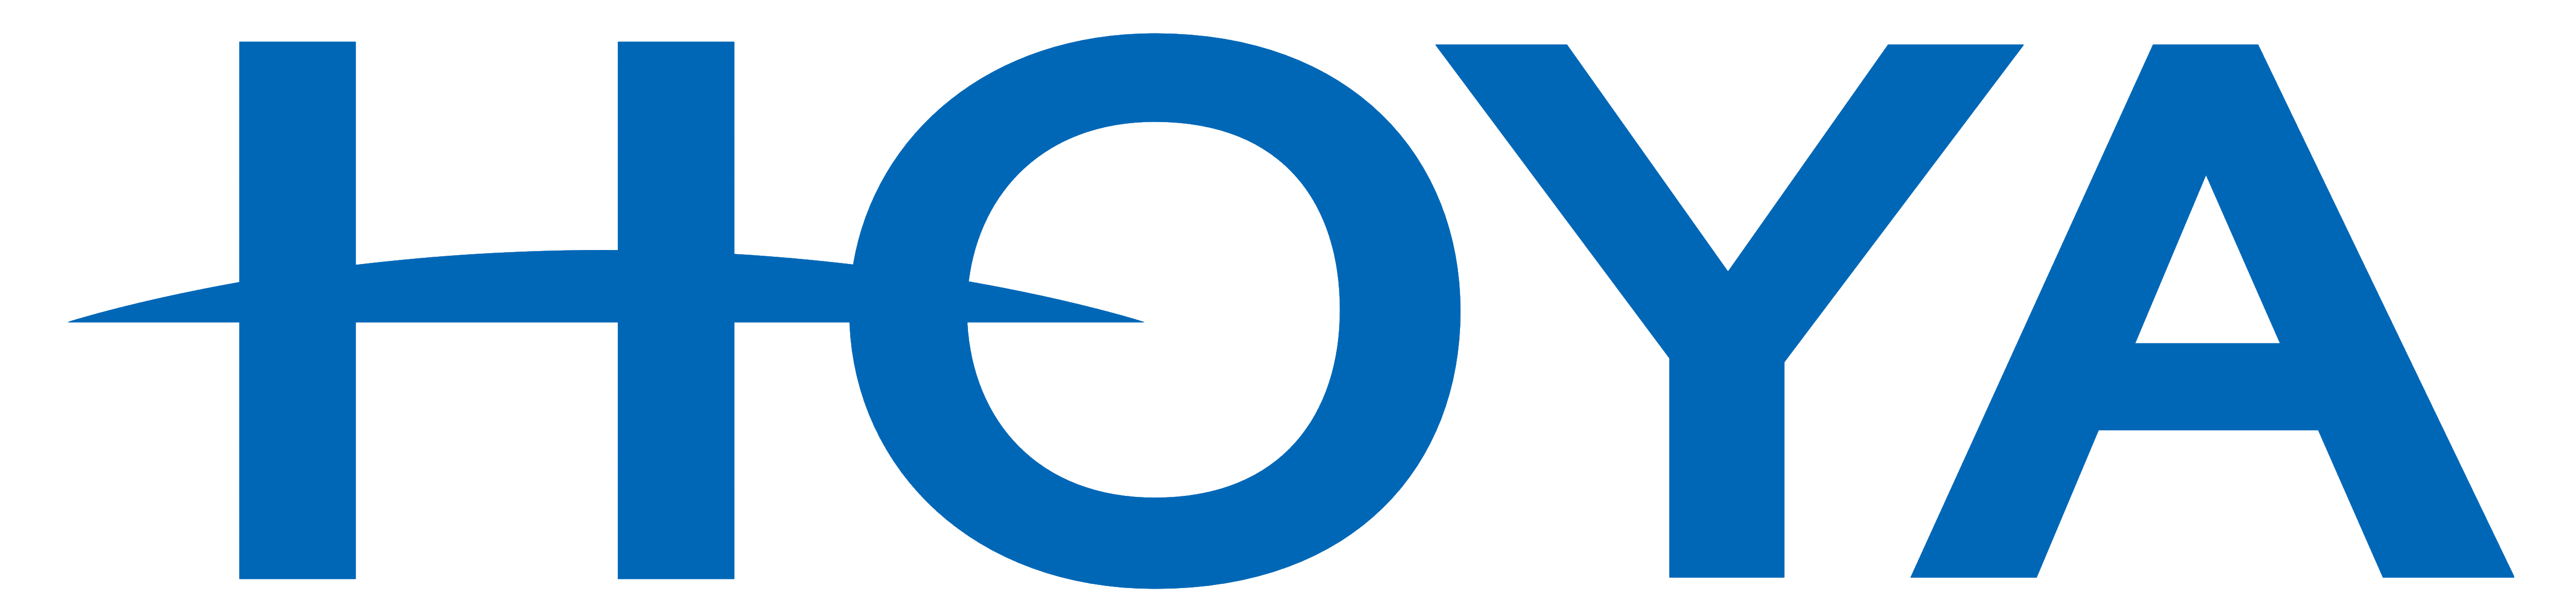 Hoya_logo_logotype